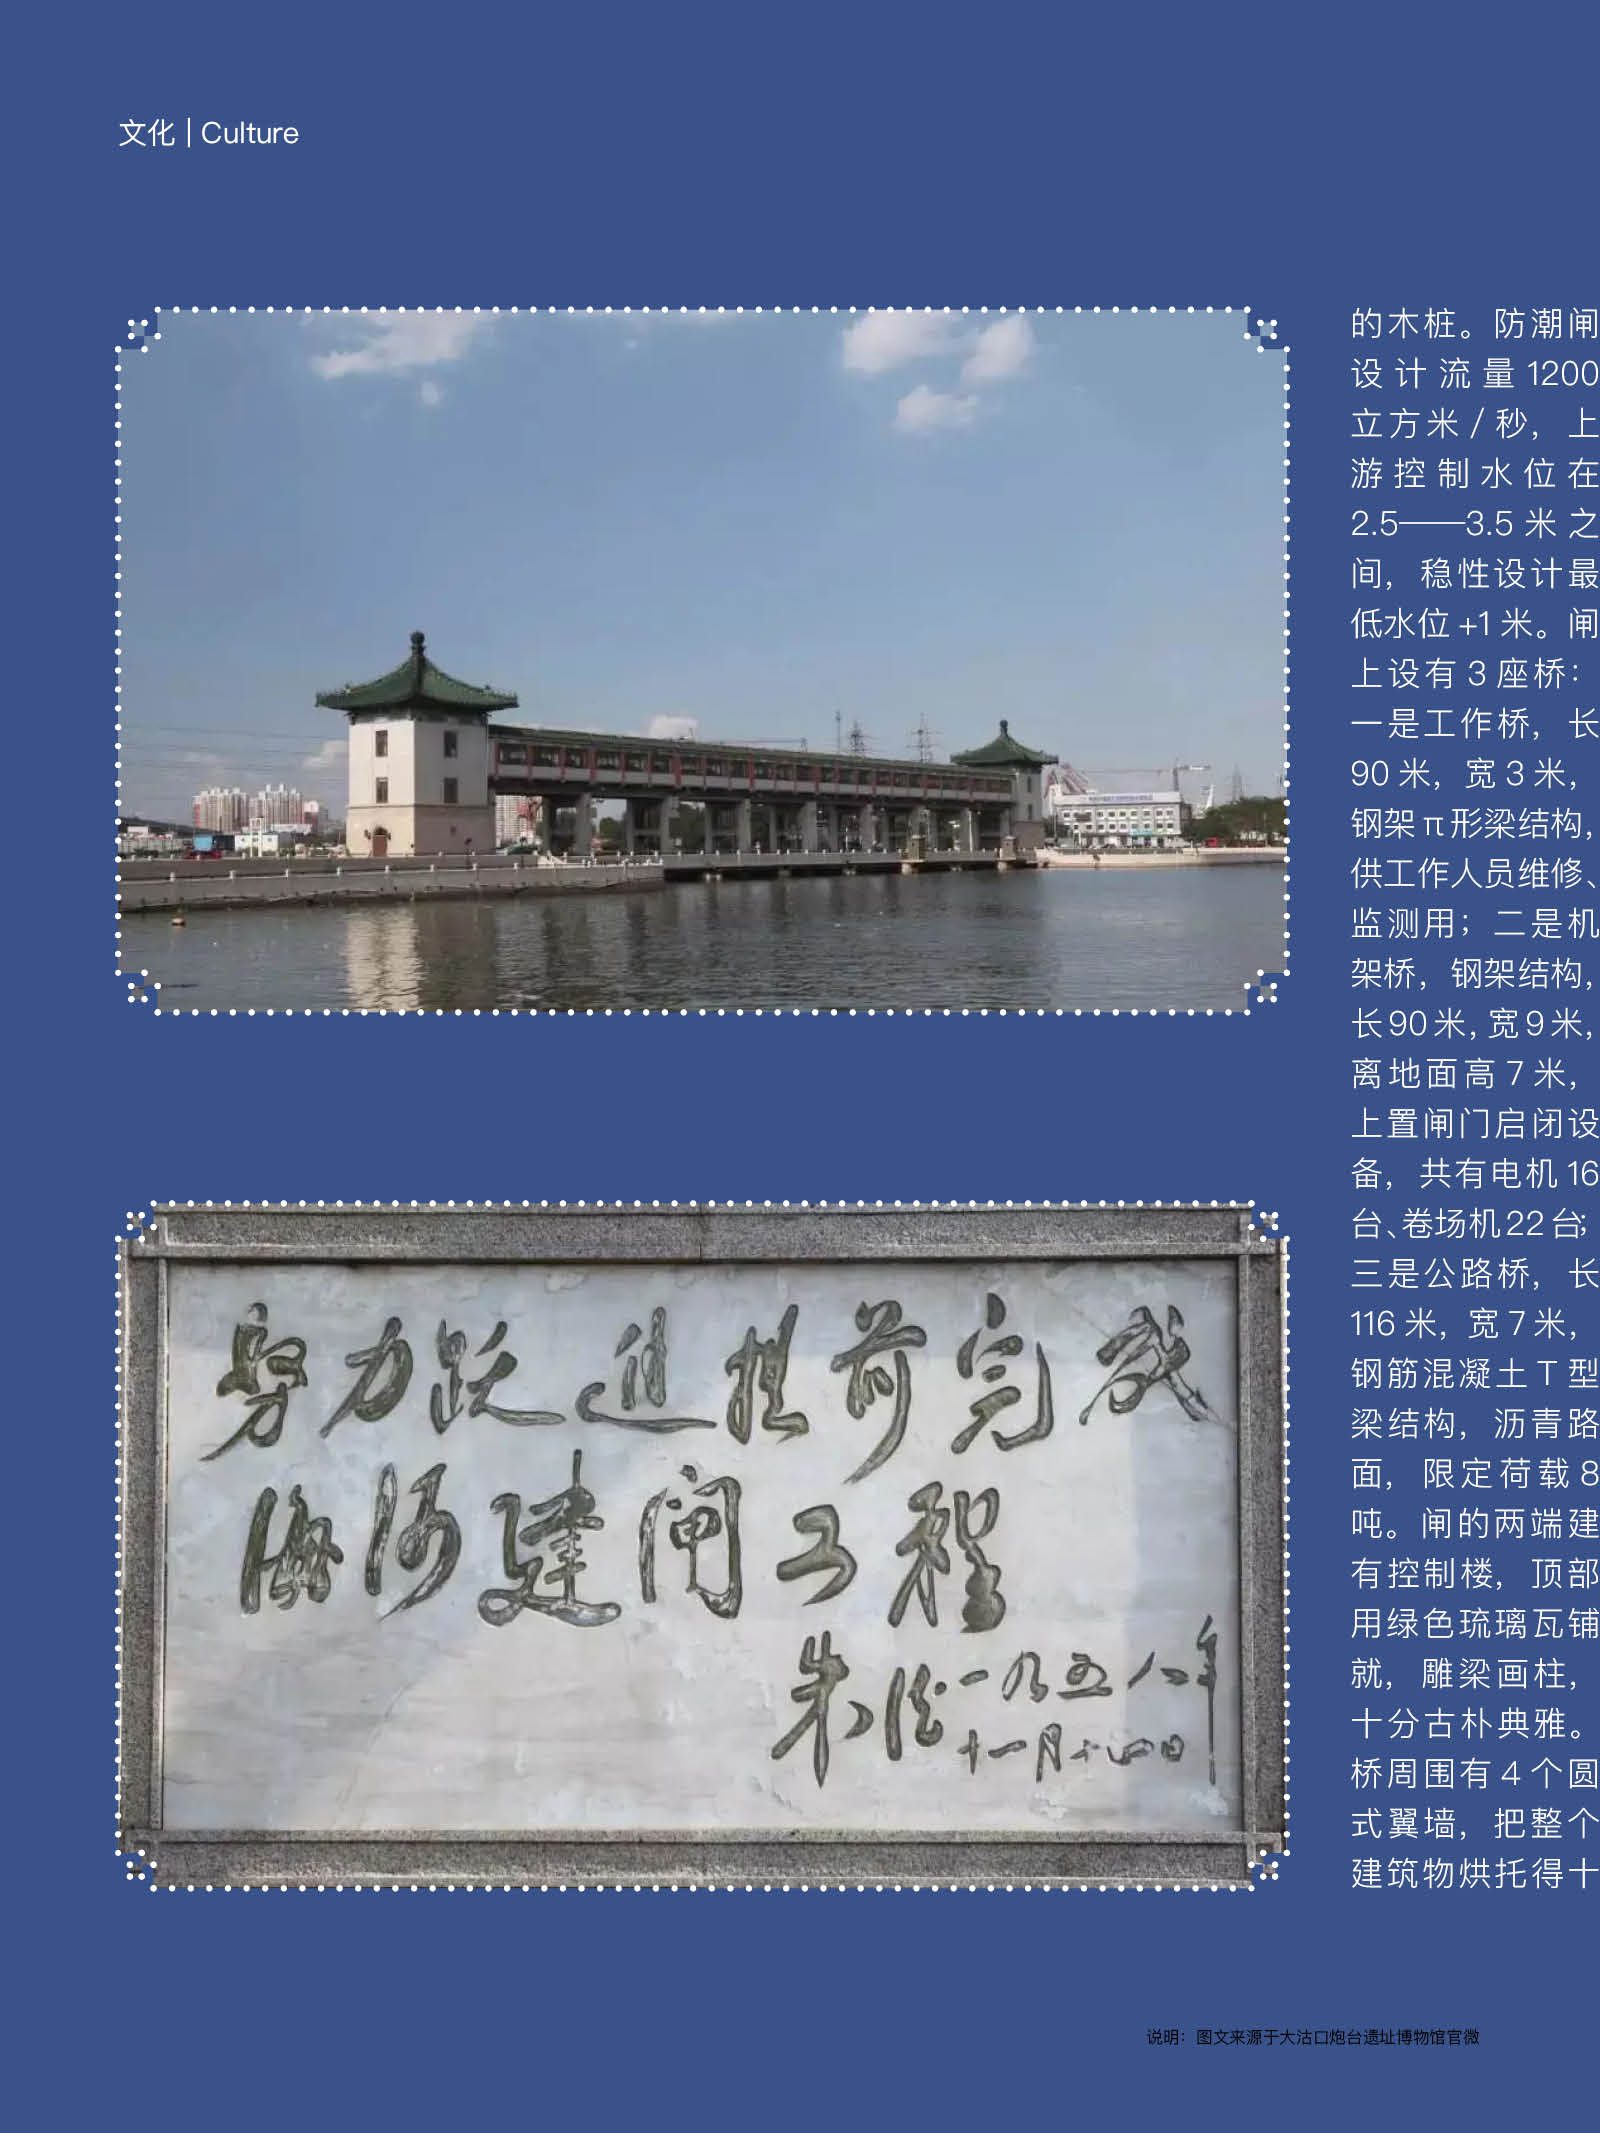 津河闸-天津城市景观-图片